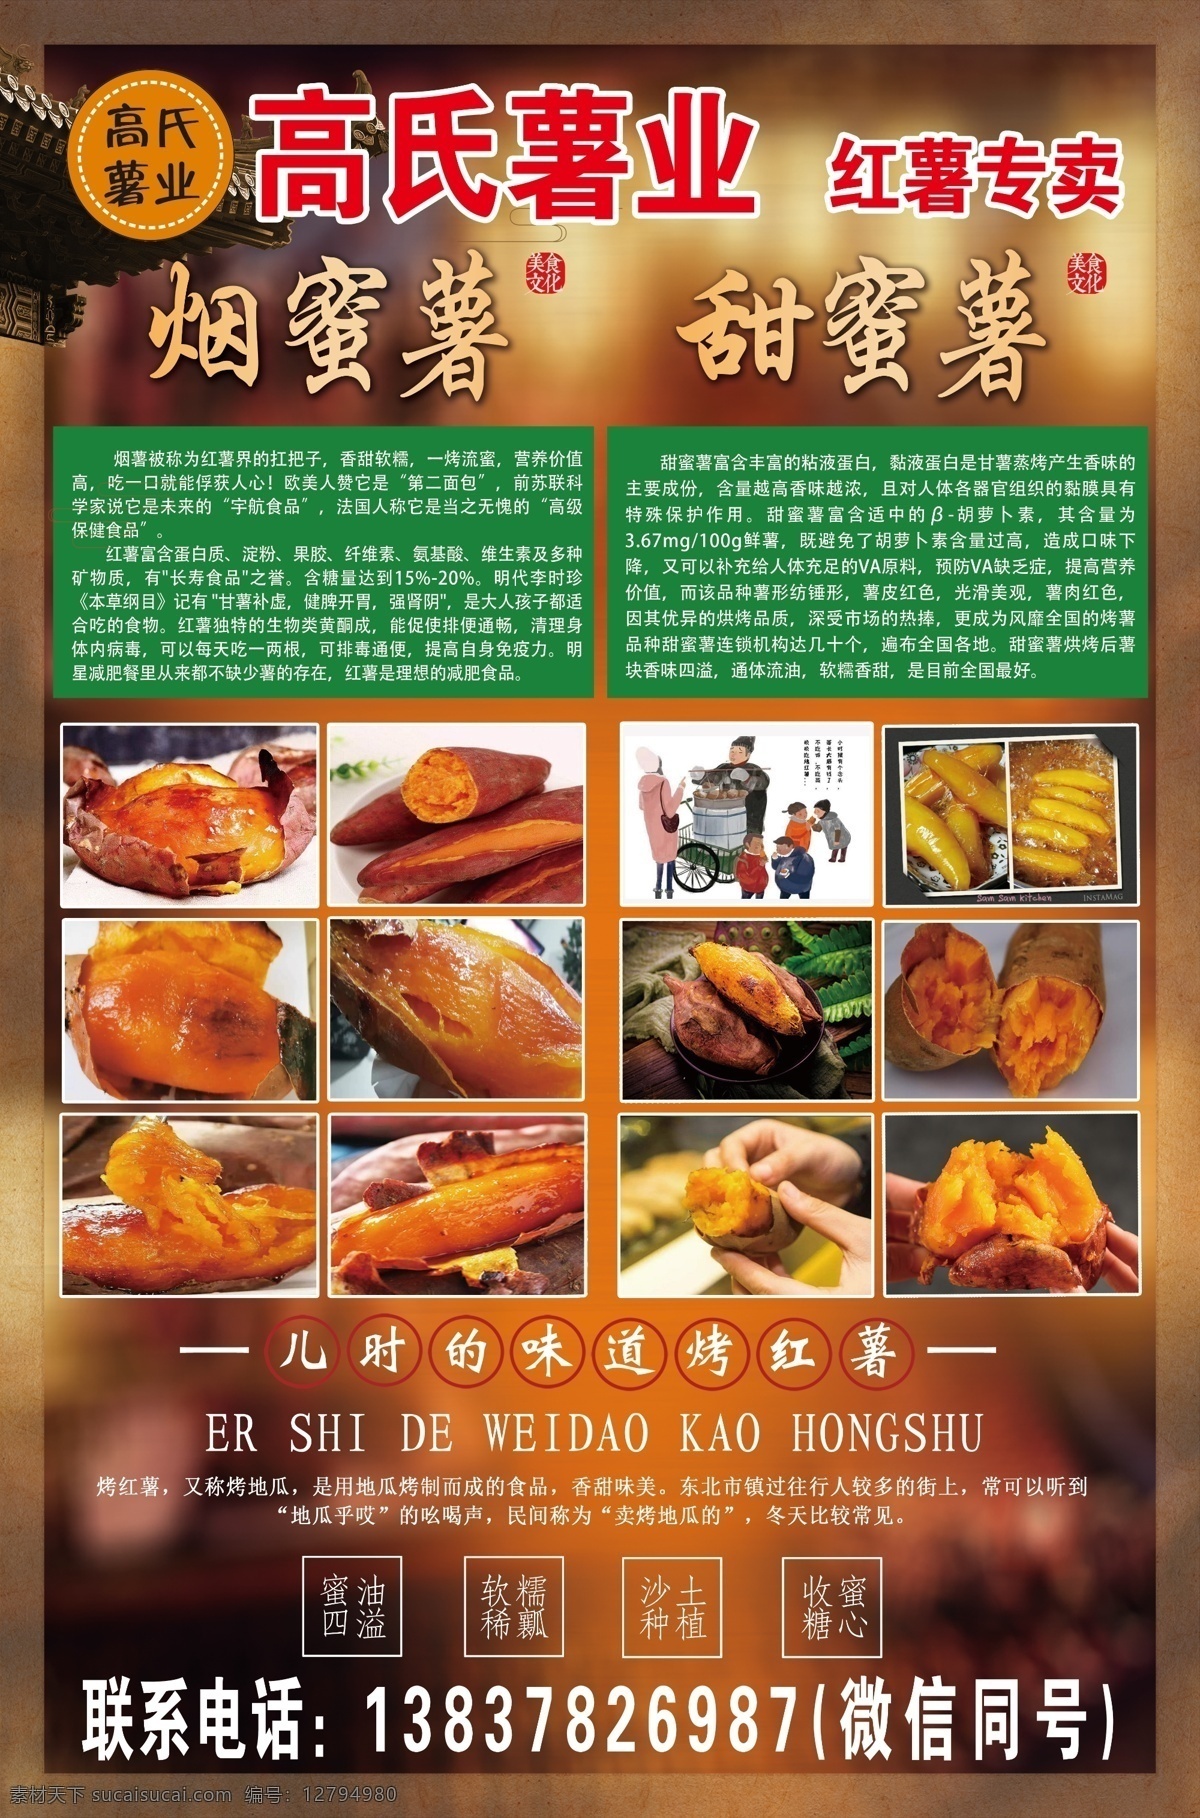 红薯 宣传页 红薯渐变底面 烤红薯图片 传统红薯宣传 儿时的味道 红薯海报